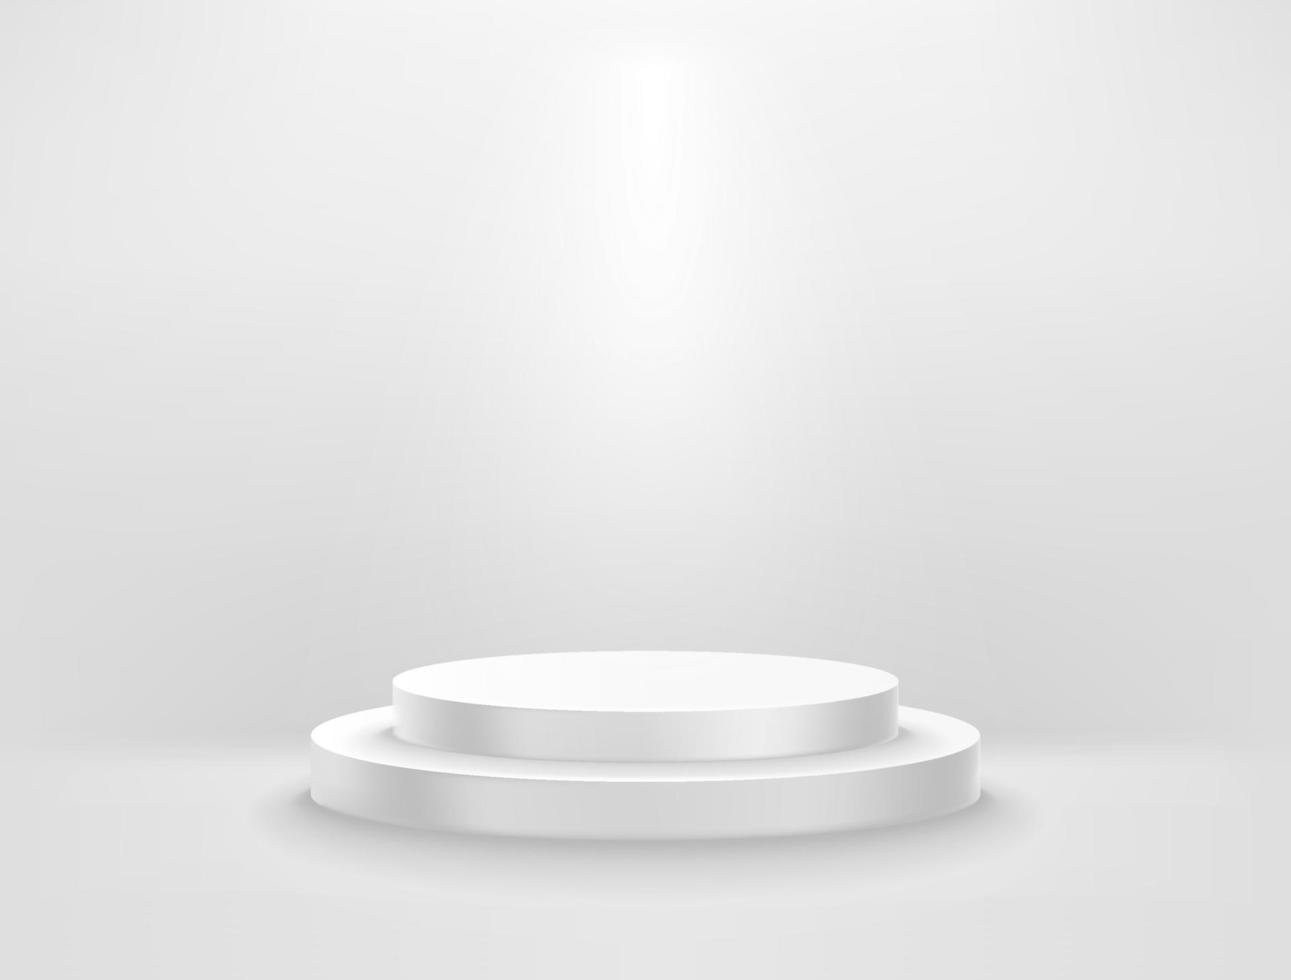 sala blanca iluminada con podio circular. Ilustración de vector de estilo 3d realista